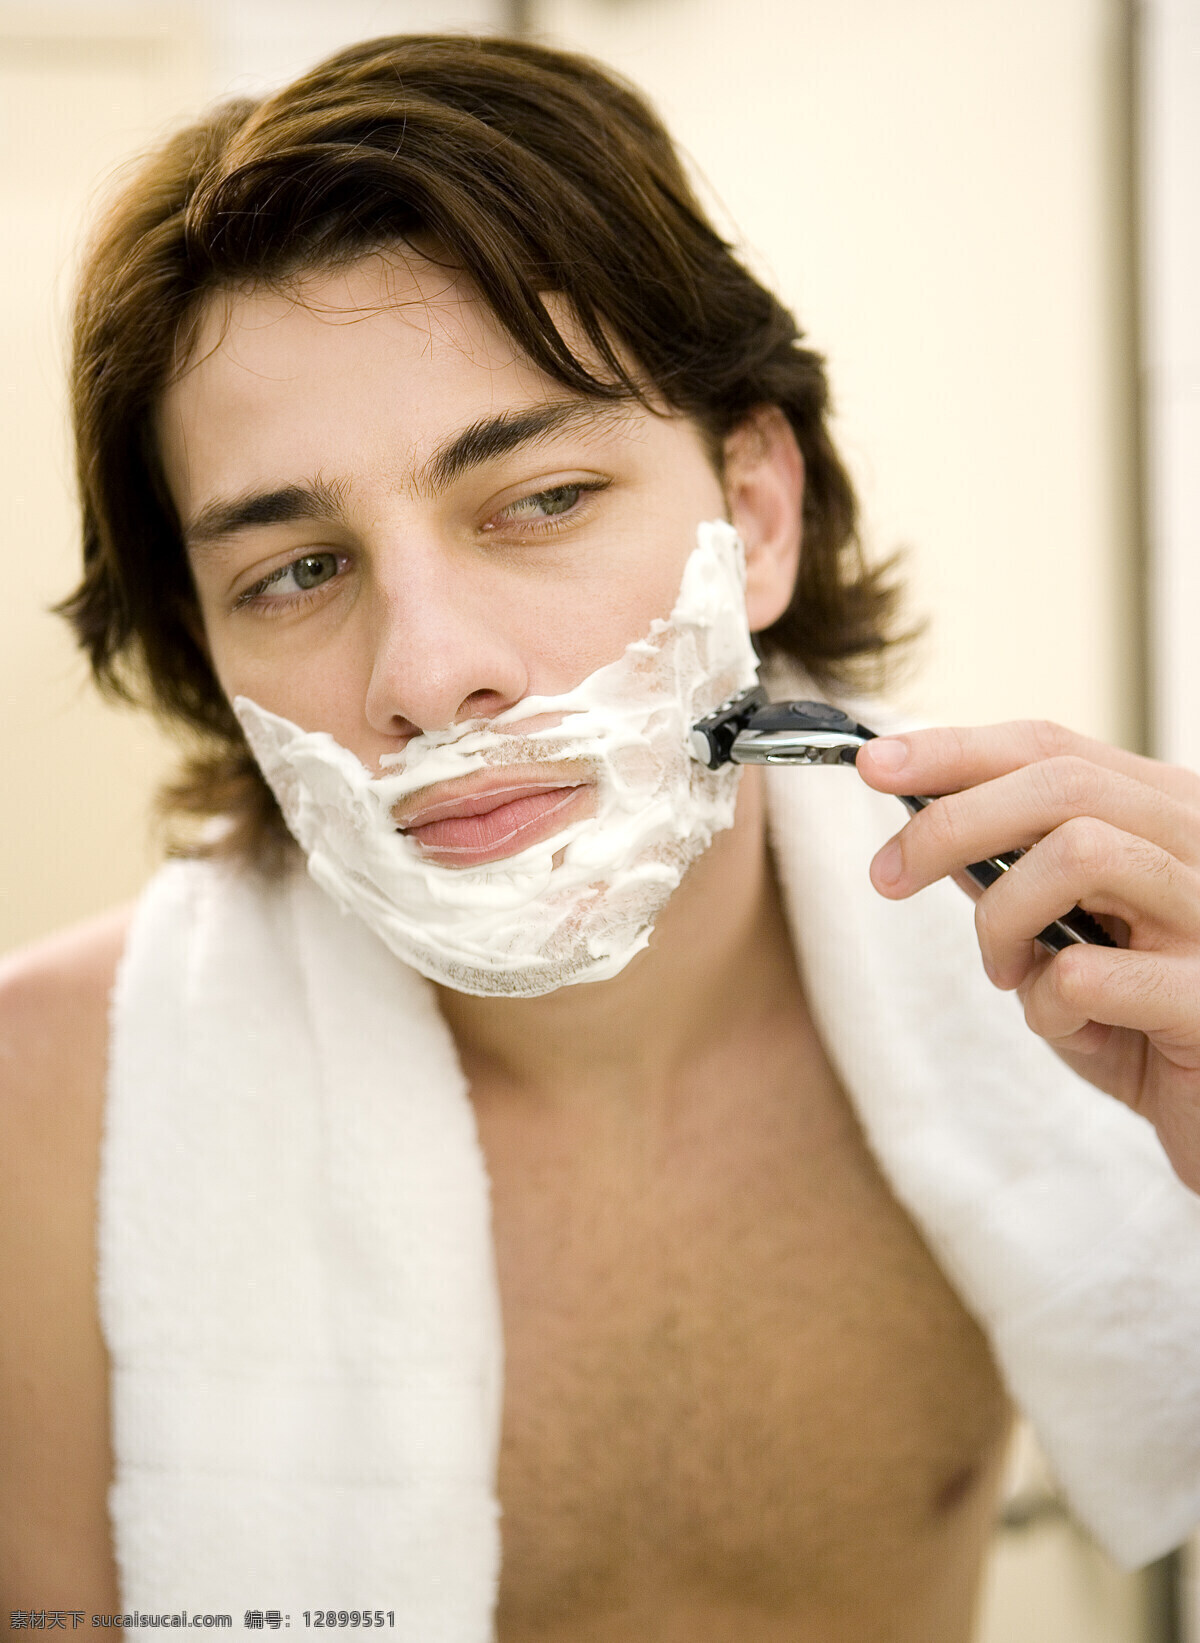 剃须刀 刮 胡须 男人 剃须啫喱 刮胡子 剃须 国外男人 魅力男人 人物图库 高清图片 男人图片 人物图片